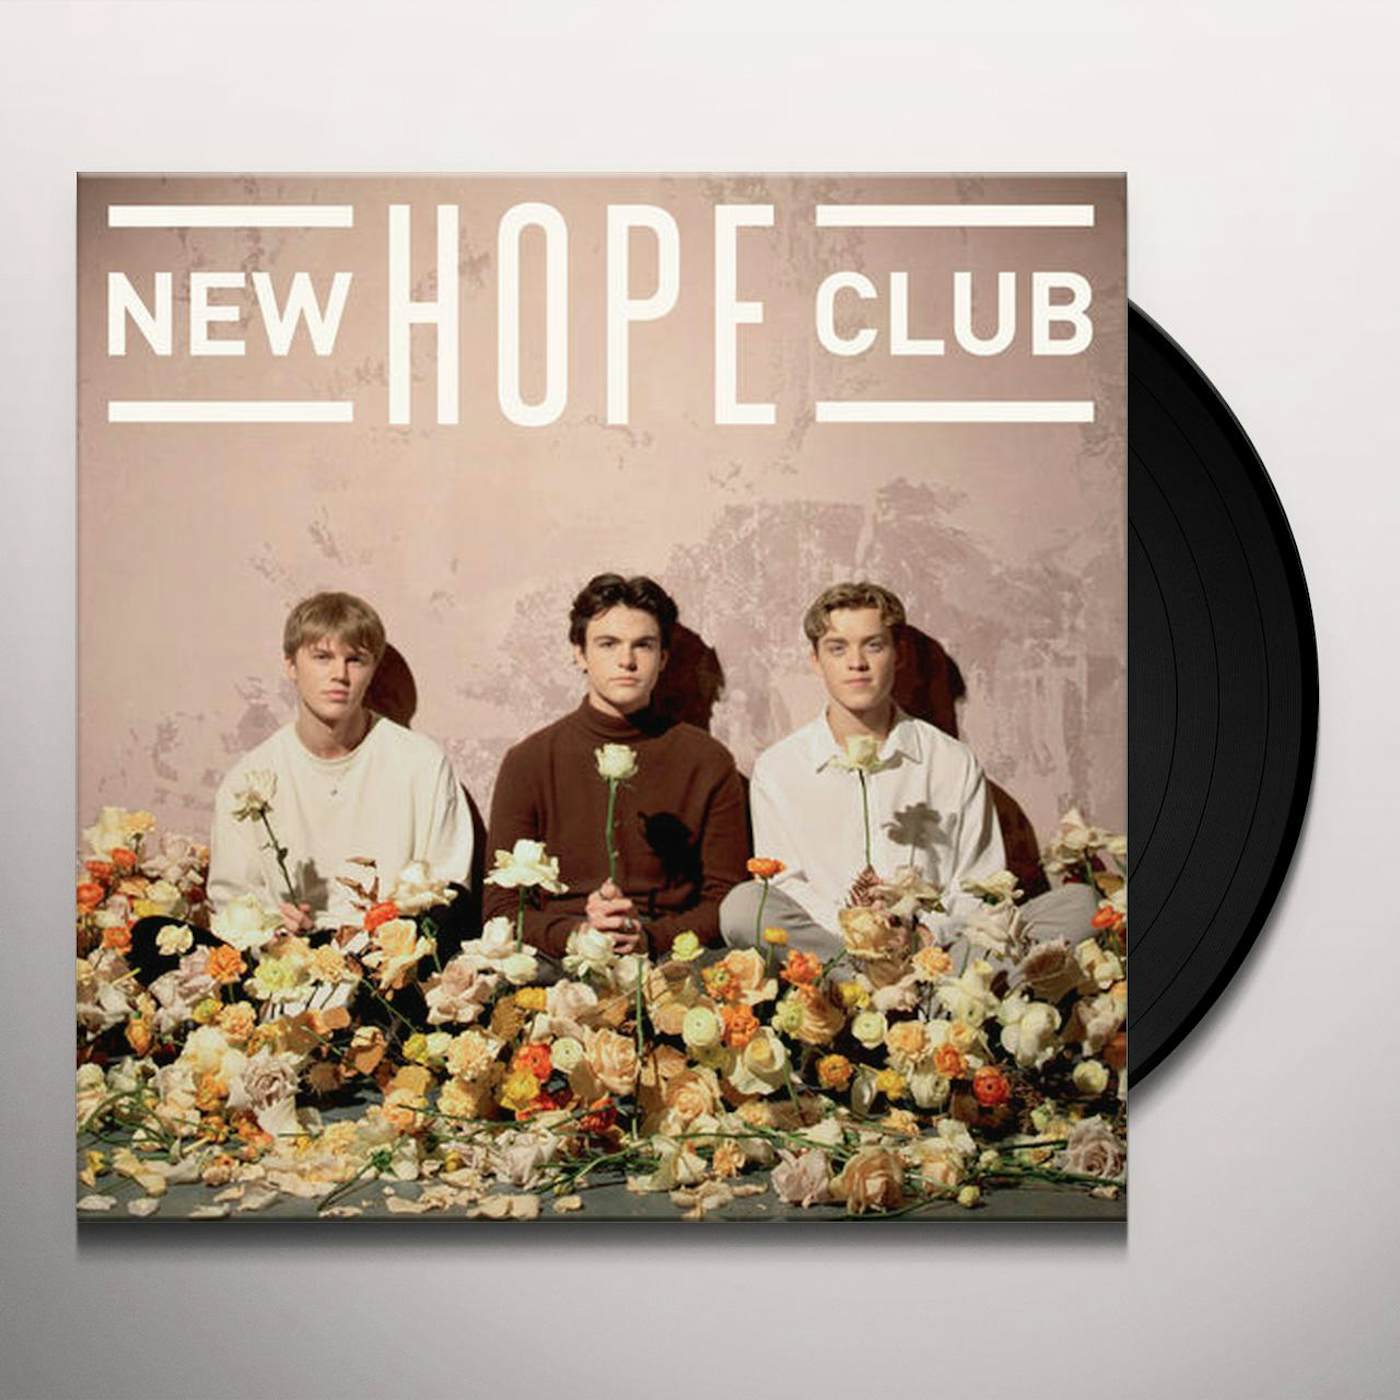 New time hope. New hope Club. New hope Club 2022. New hope Club Band. New hope Club give me time.